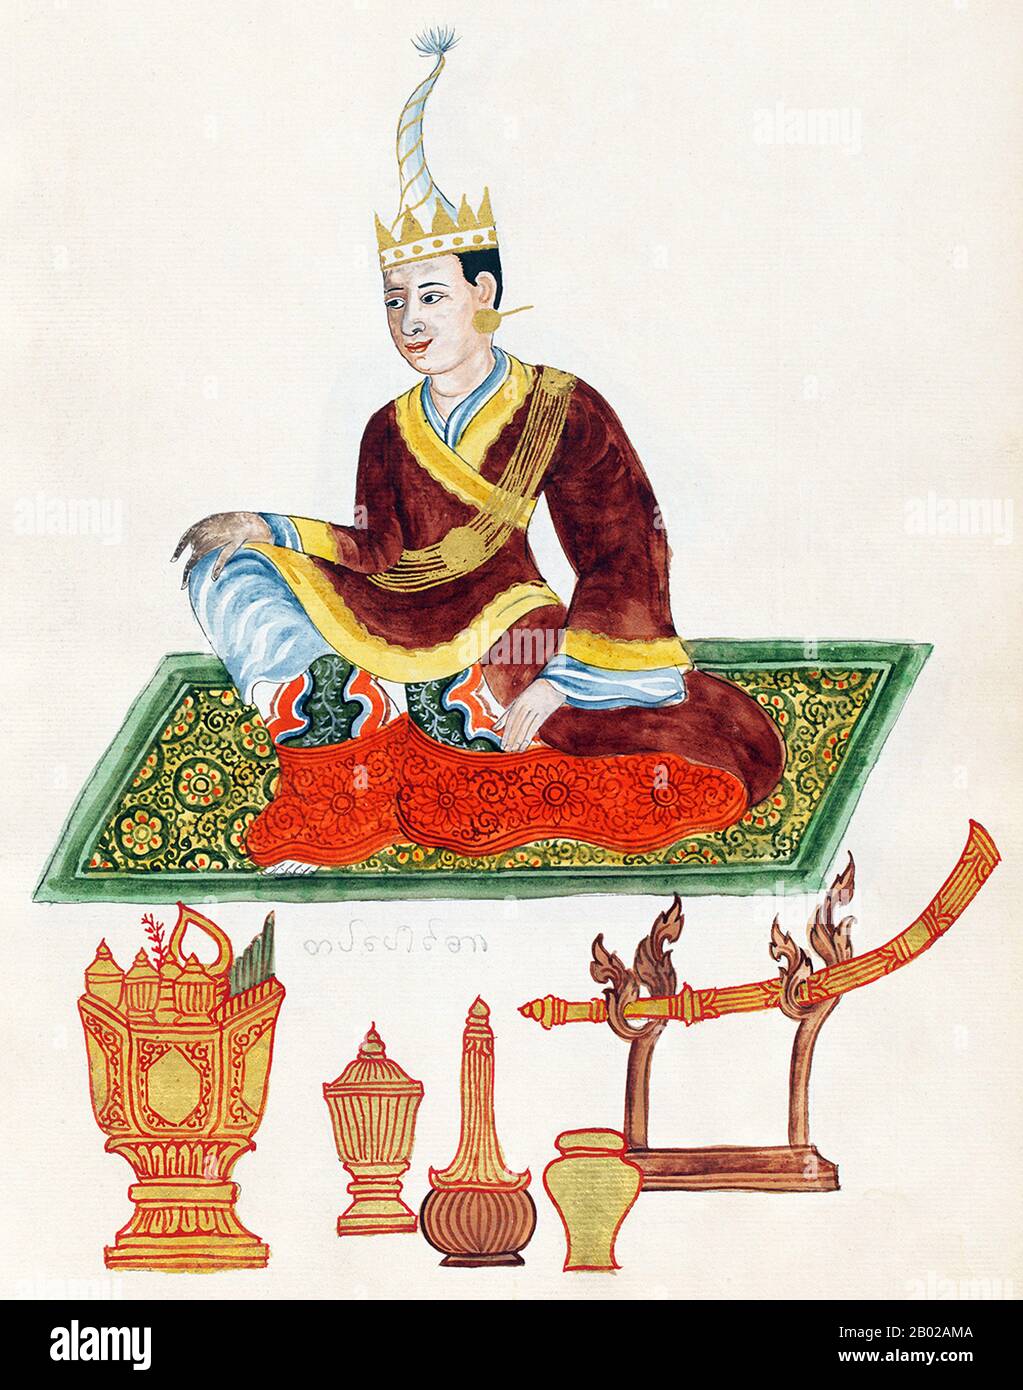 La dinastia Konbaung fu l'ultima dinastia che governò la Birmania (Myanmar), dal 1752 al 1885. La dinastia creò il secondo impero più grande della storia birmana, e continuò le riforme amministrative avviate dalla dinastia Toungoo, gettando le basi dello stato moderno della Birmania. Le riforme si rivelarono insufficienti per arginare il progresso degli inglesi, che sconfissero i birmani in tutte e tre le guerre anglo-birmane in un arco di sei decenni (1824–1885) e terminarono la monarchia birmana millenaria nel 1885. Foto Stock